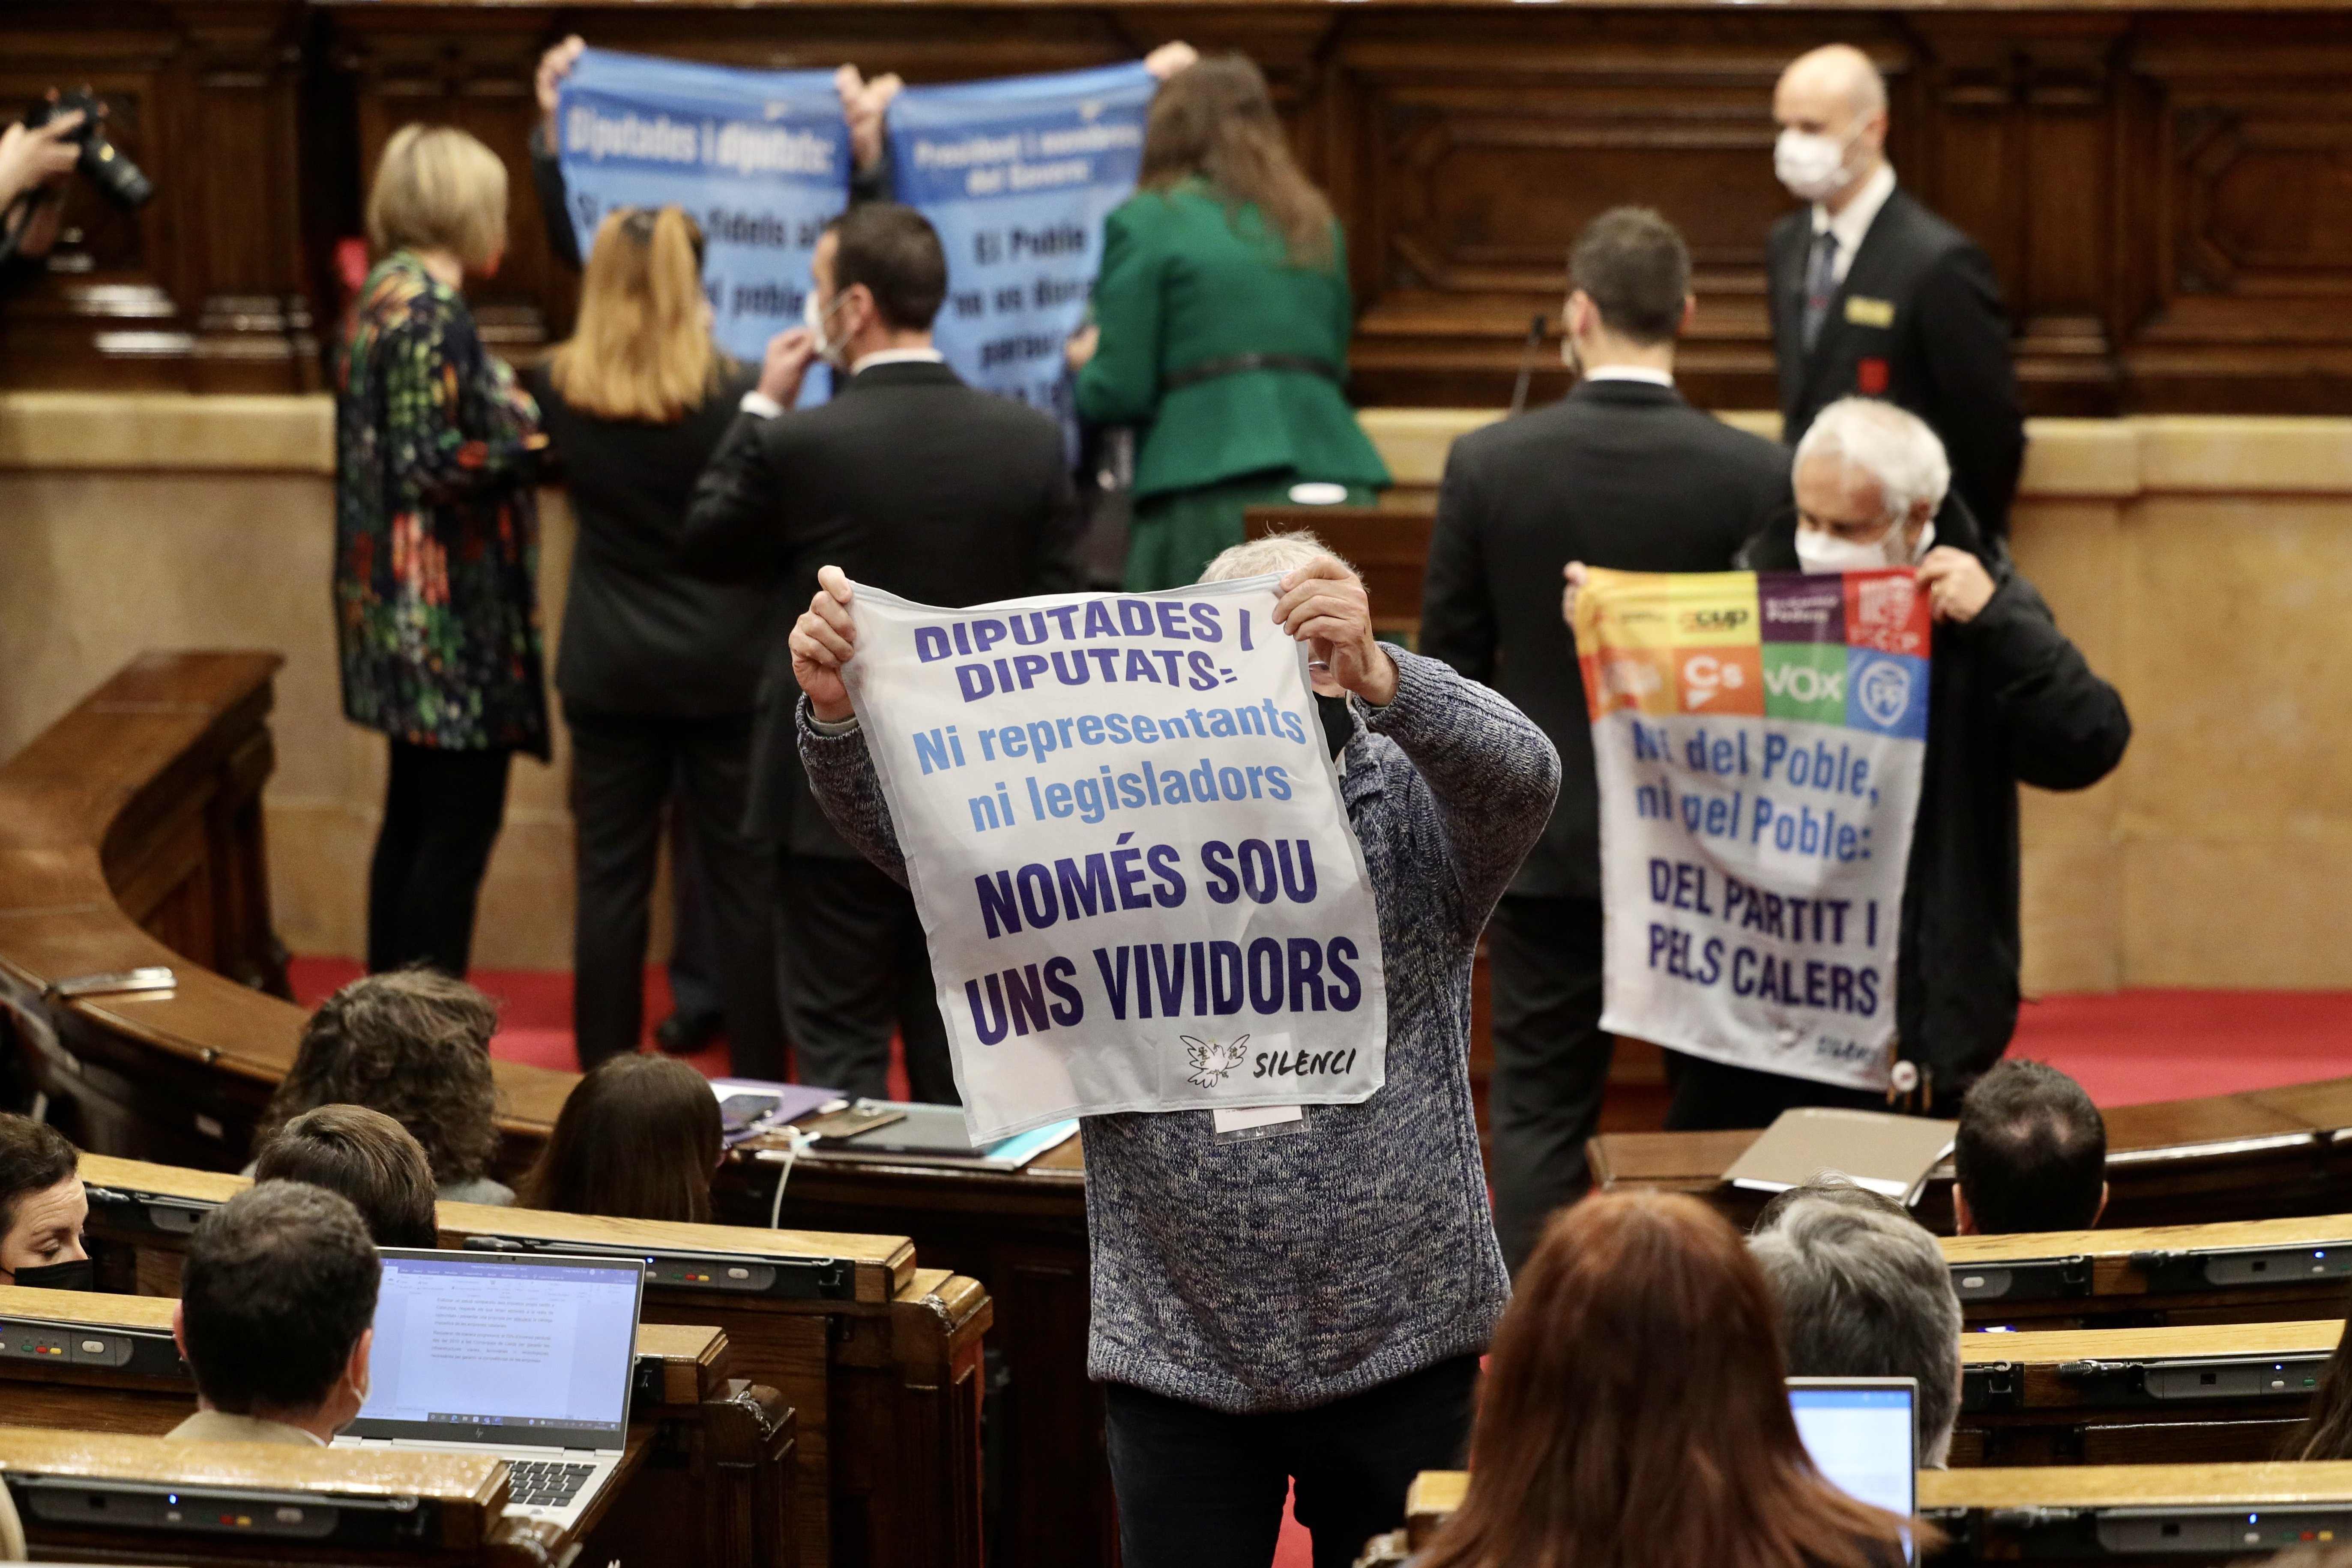 Activistas independentistas irrumpen en el Parlament: "Sois unos vividores"